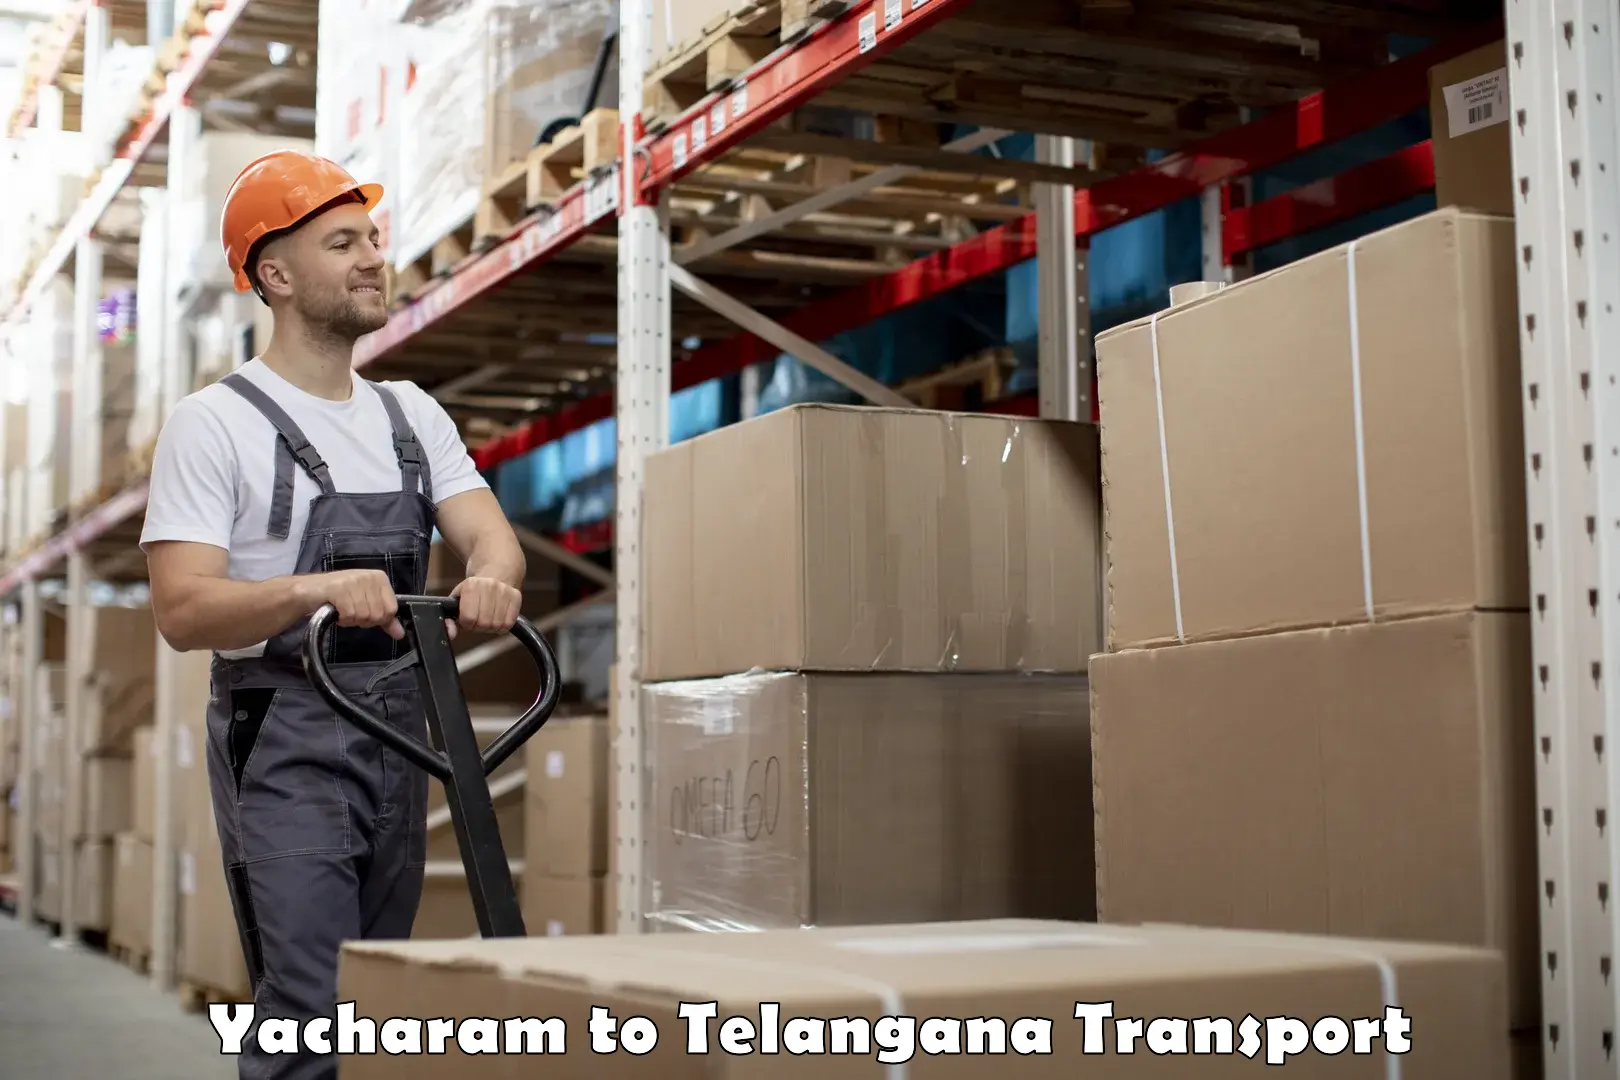 Truck transport companies in India Yacharam to Gudur Warangal